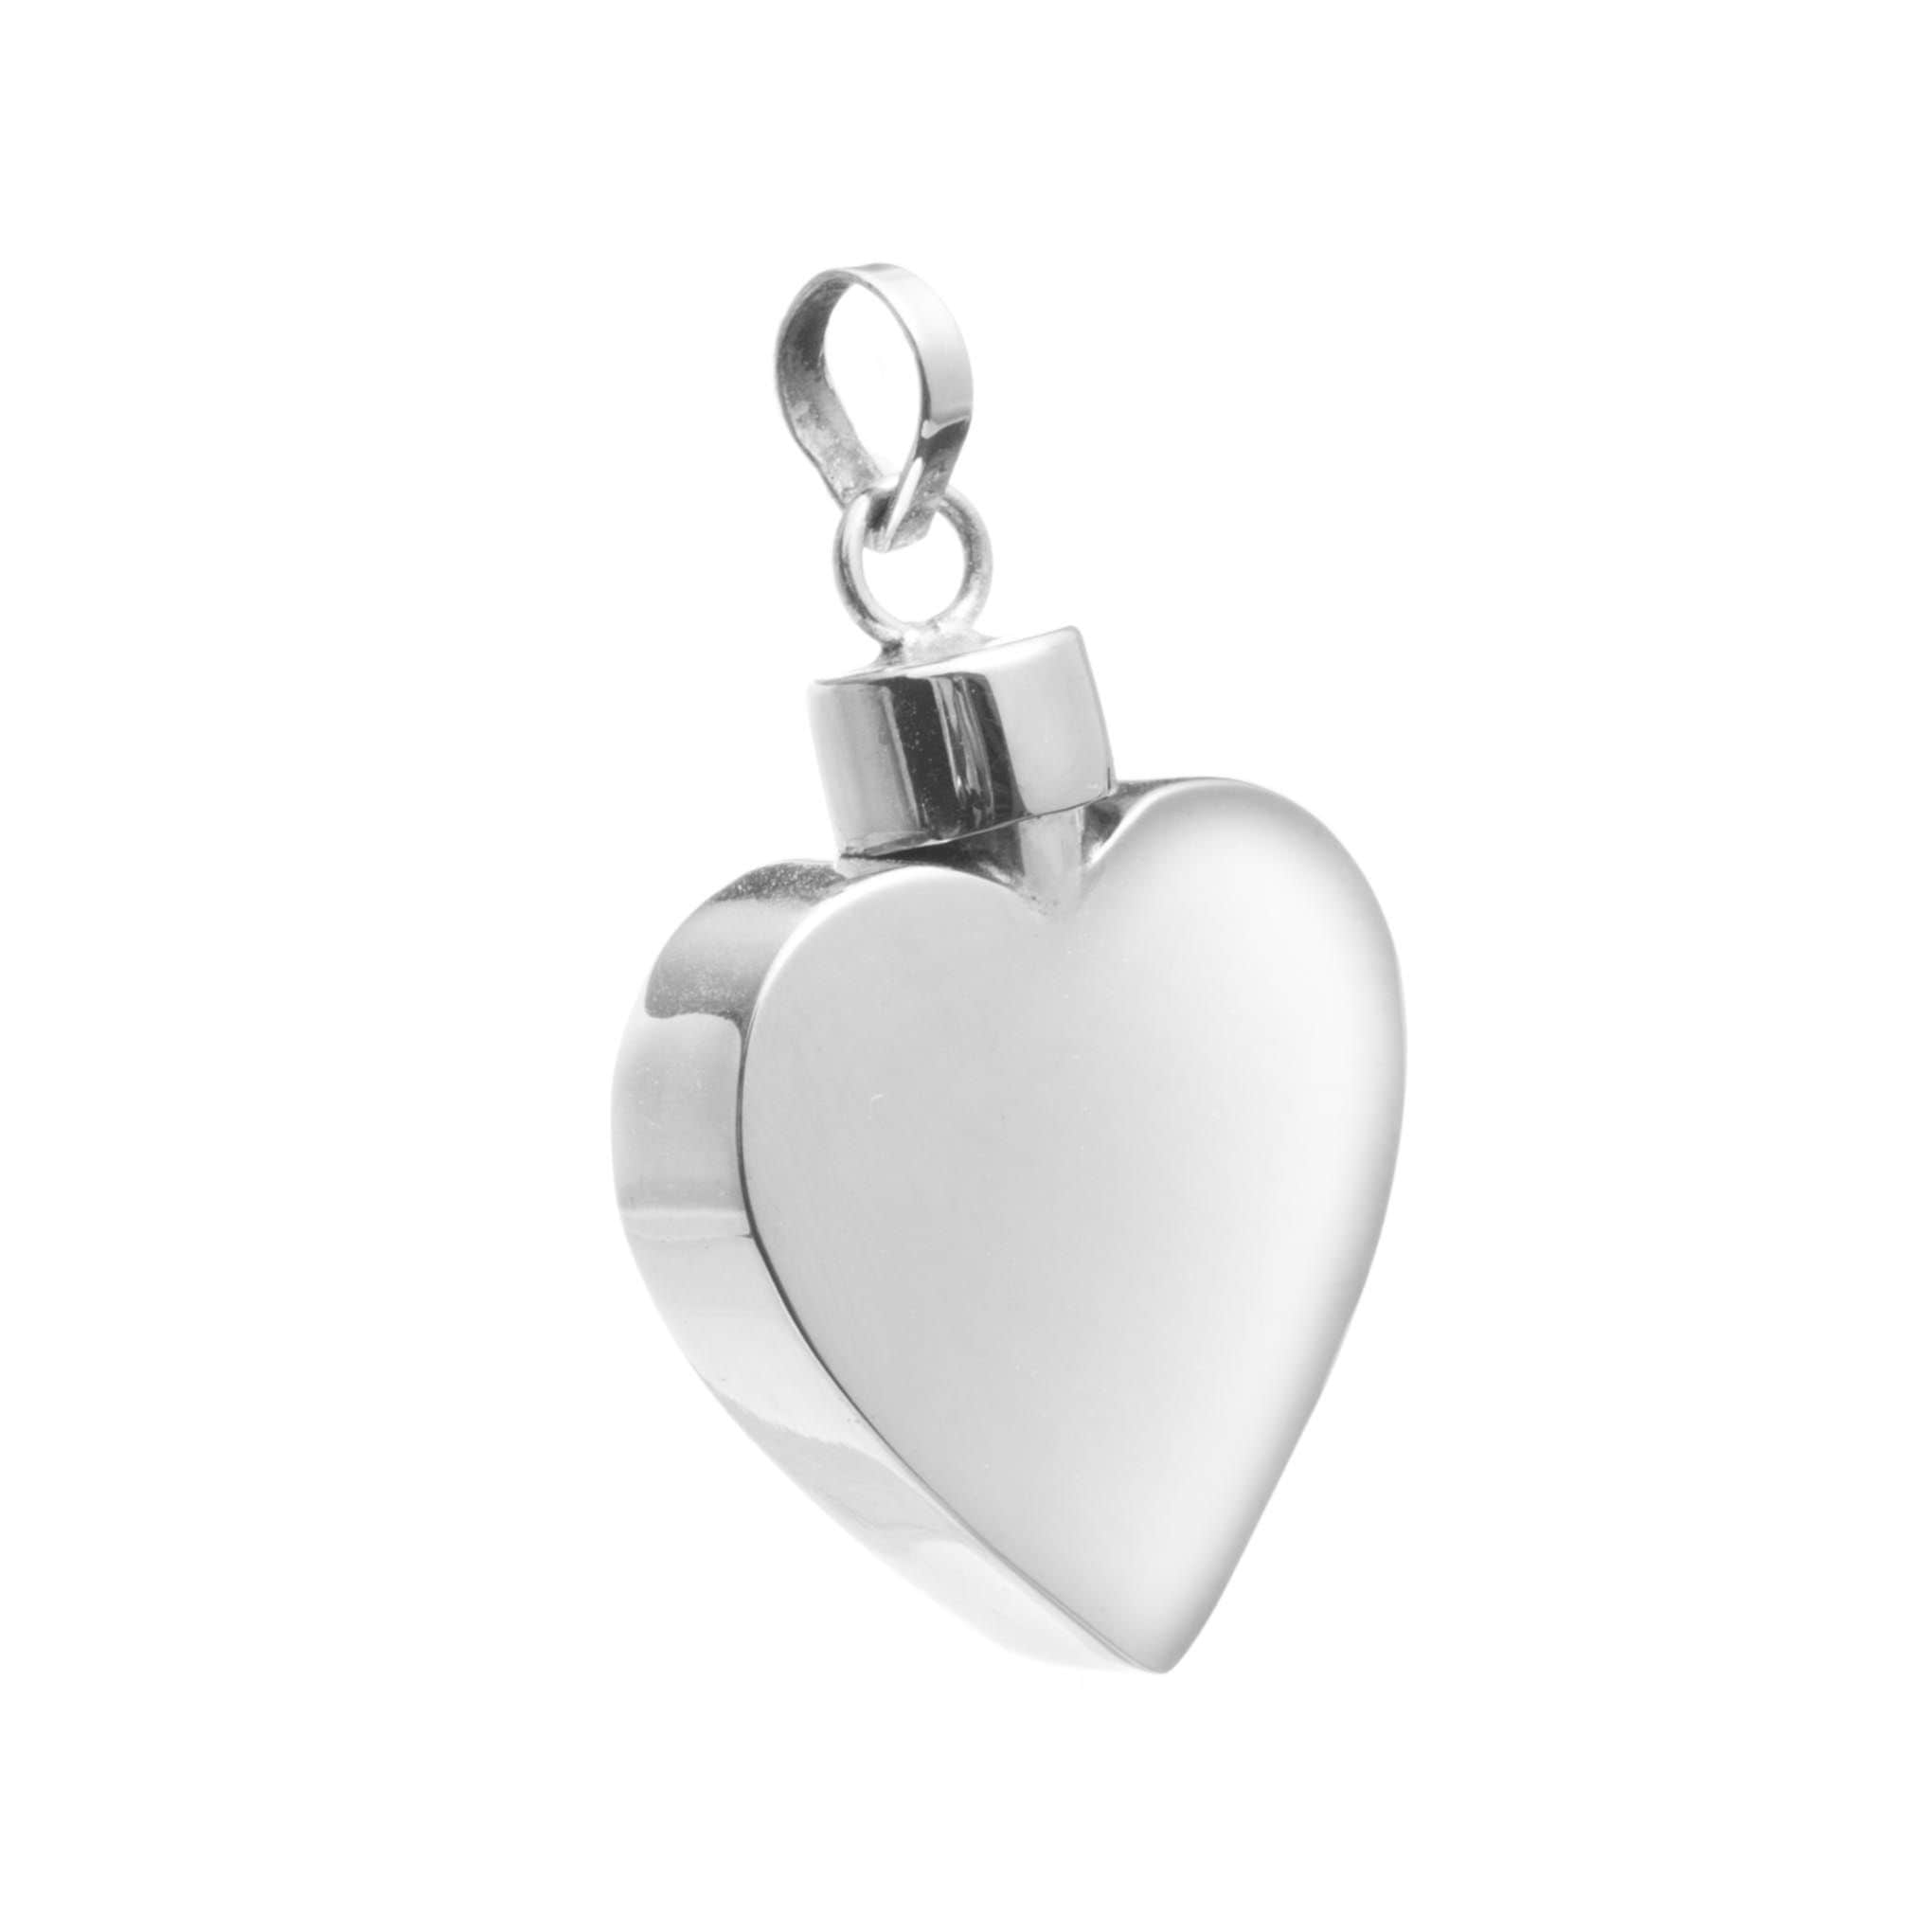 Relicario corazon plano cartoneado de plata mexicana